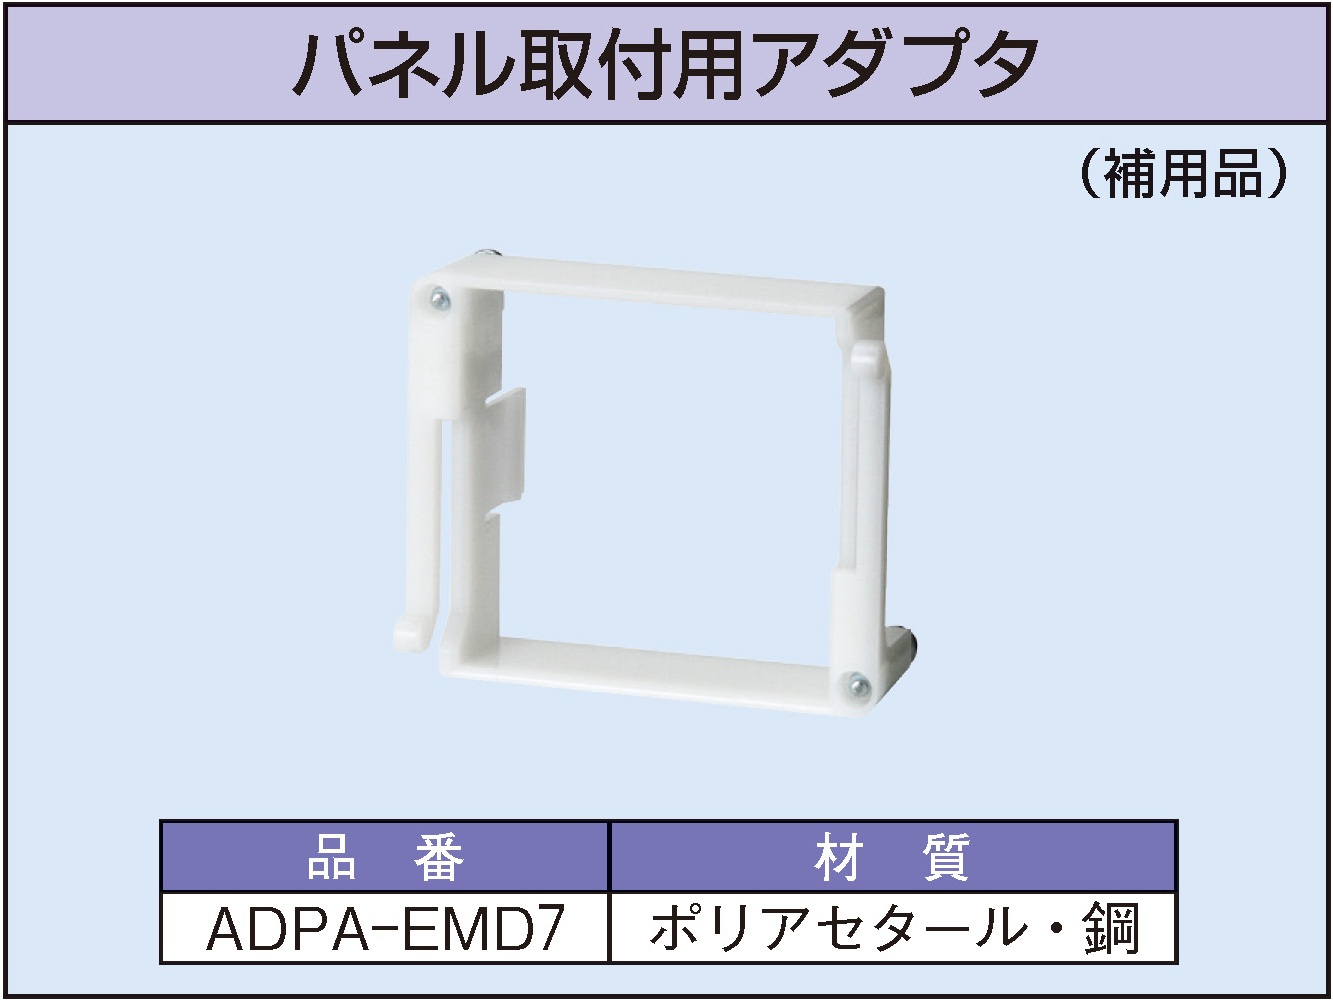 ADPA-EMD7